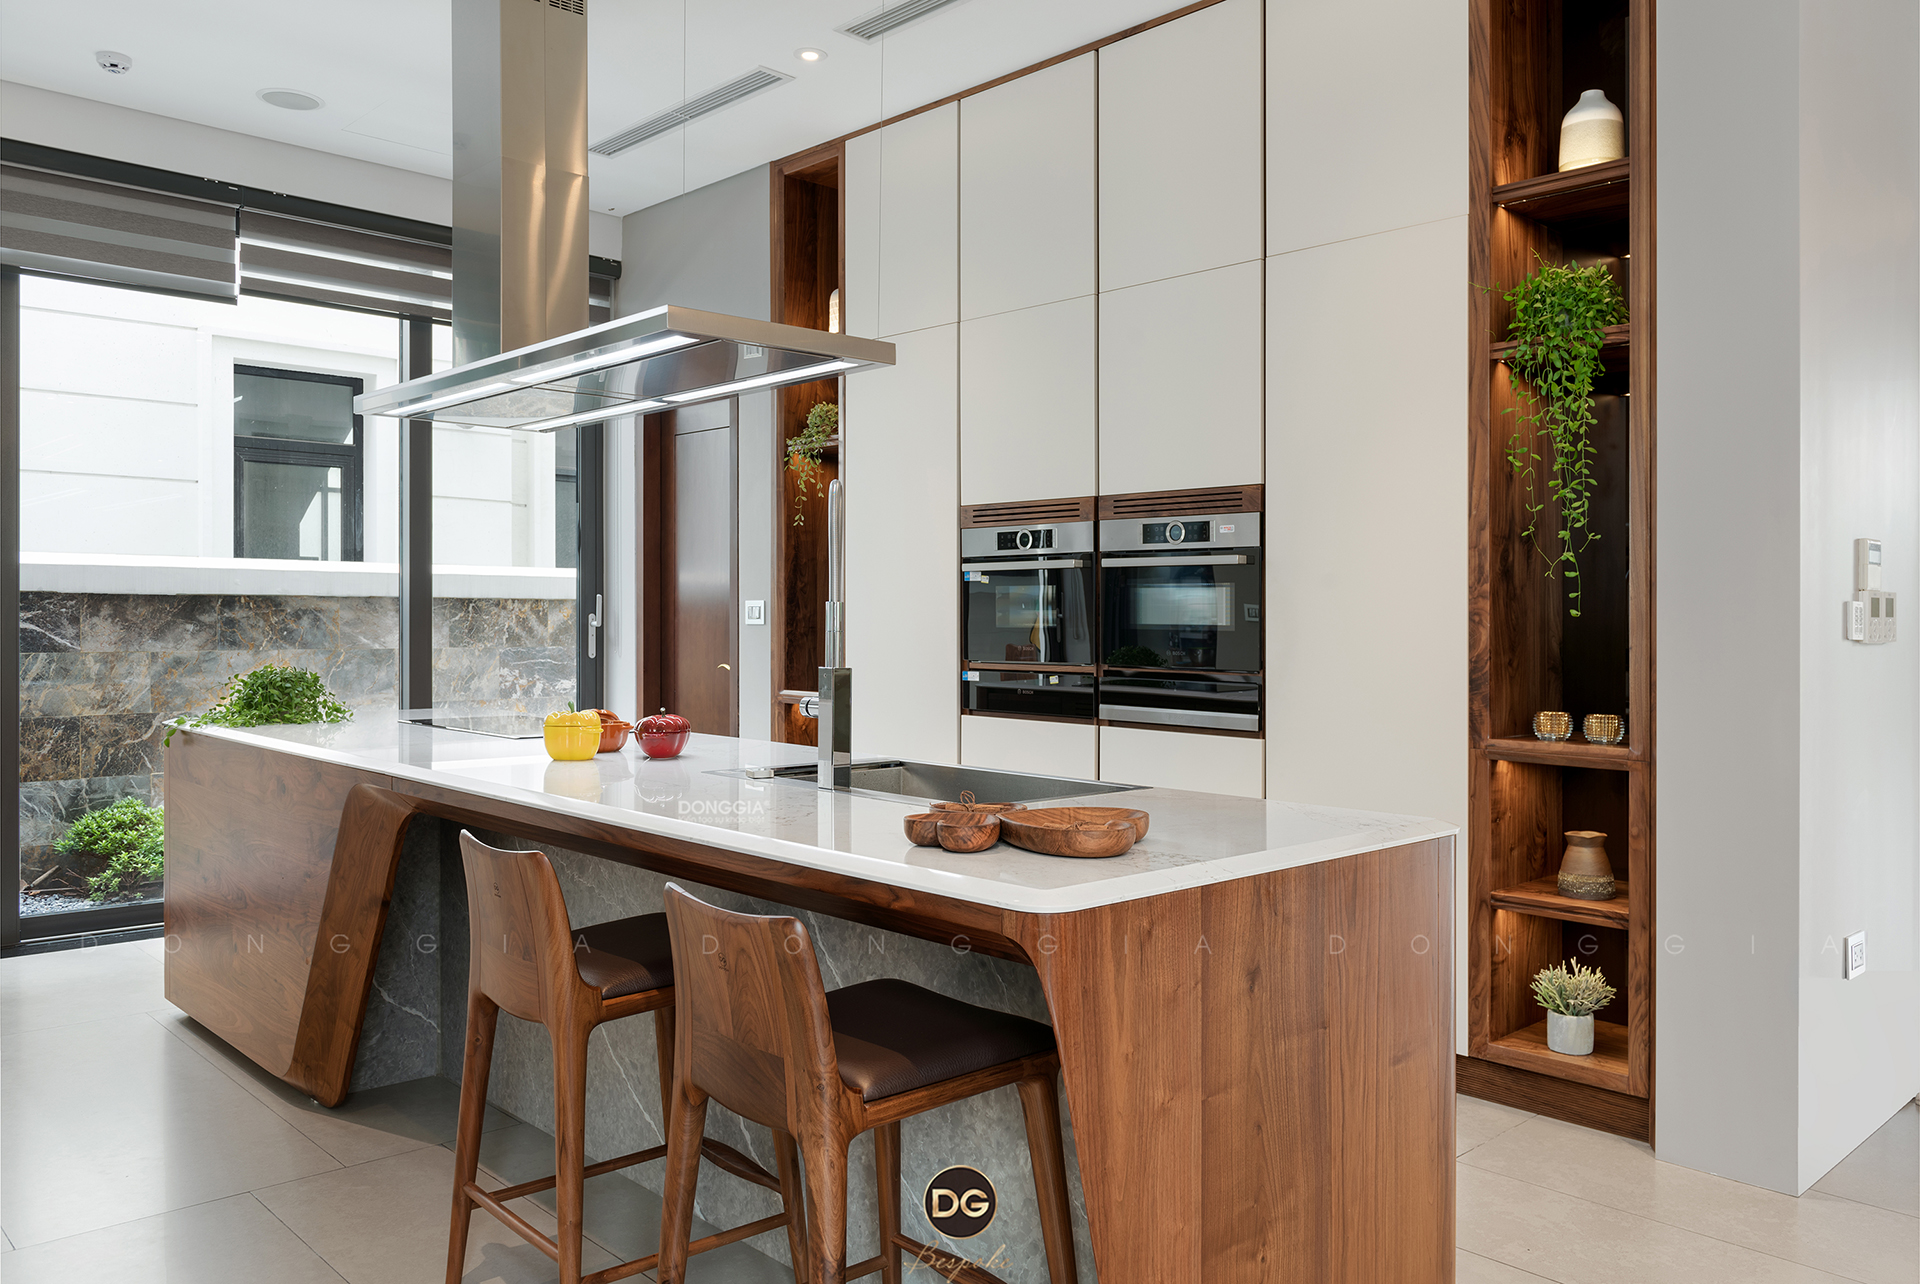 Đảo bếp hiện đại là xu hướng được ưa chuộng trong thiết kế nội thất nhà bếp. Hình ảnh liên quan sẽ giúp bạn tham khảo ý tưởng về kiểu dáng, chất liệu và màu sắc của đảo bếp hiện đại, giúp không gian bếp của bạn nổi bật và sang trọng hơn.